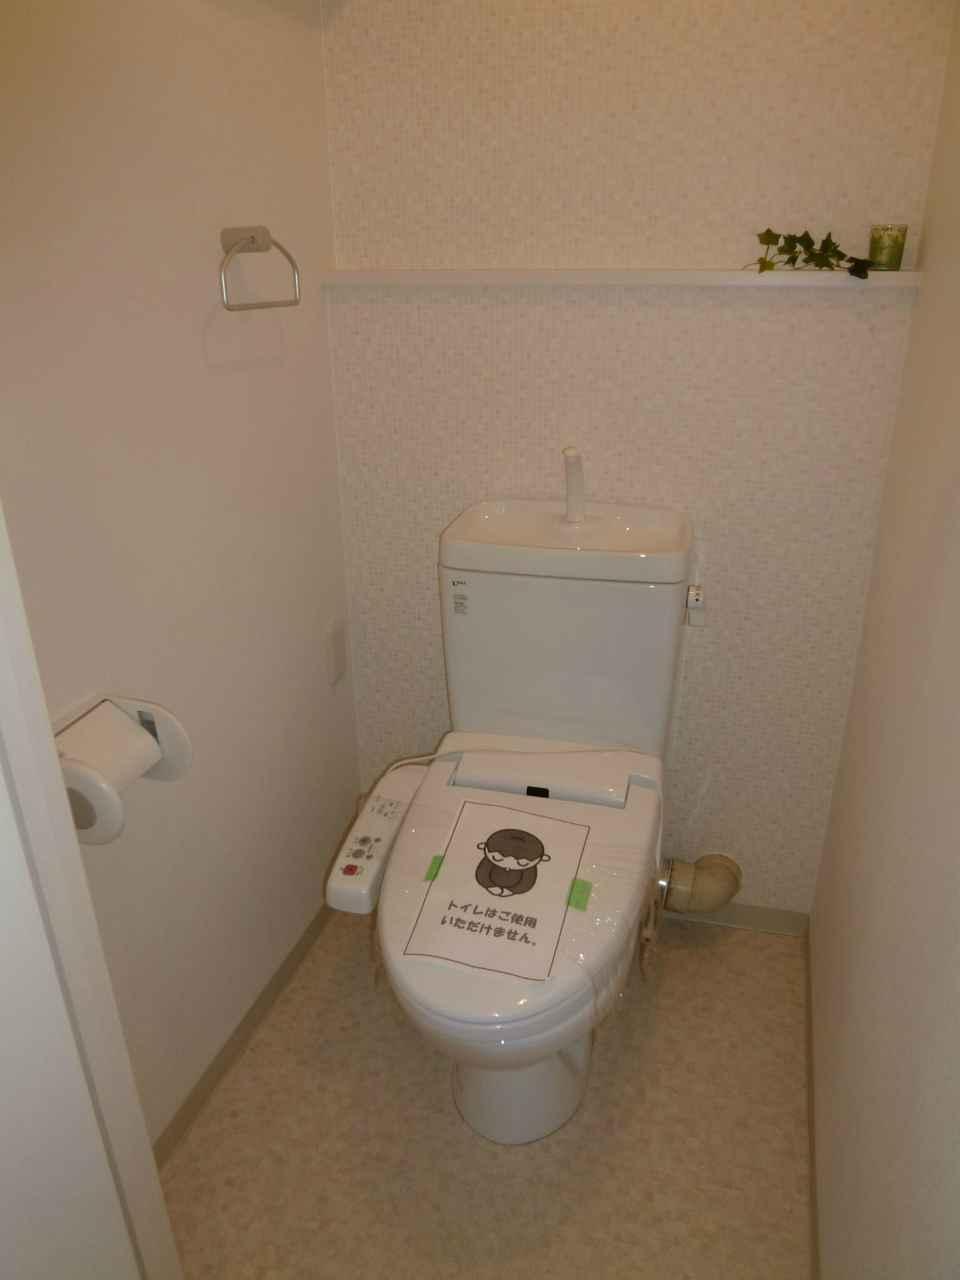 Toilet.  ☆ Bidet with toilet